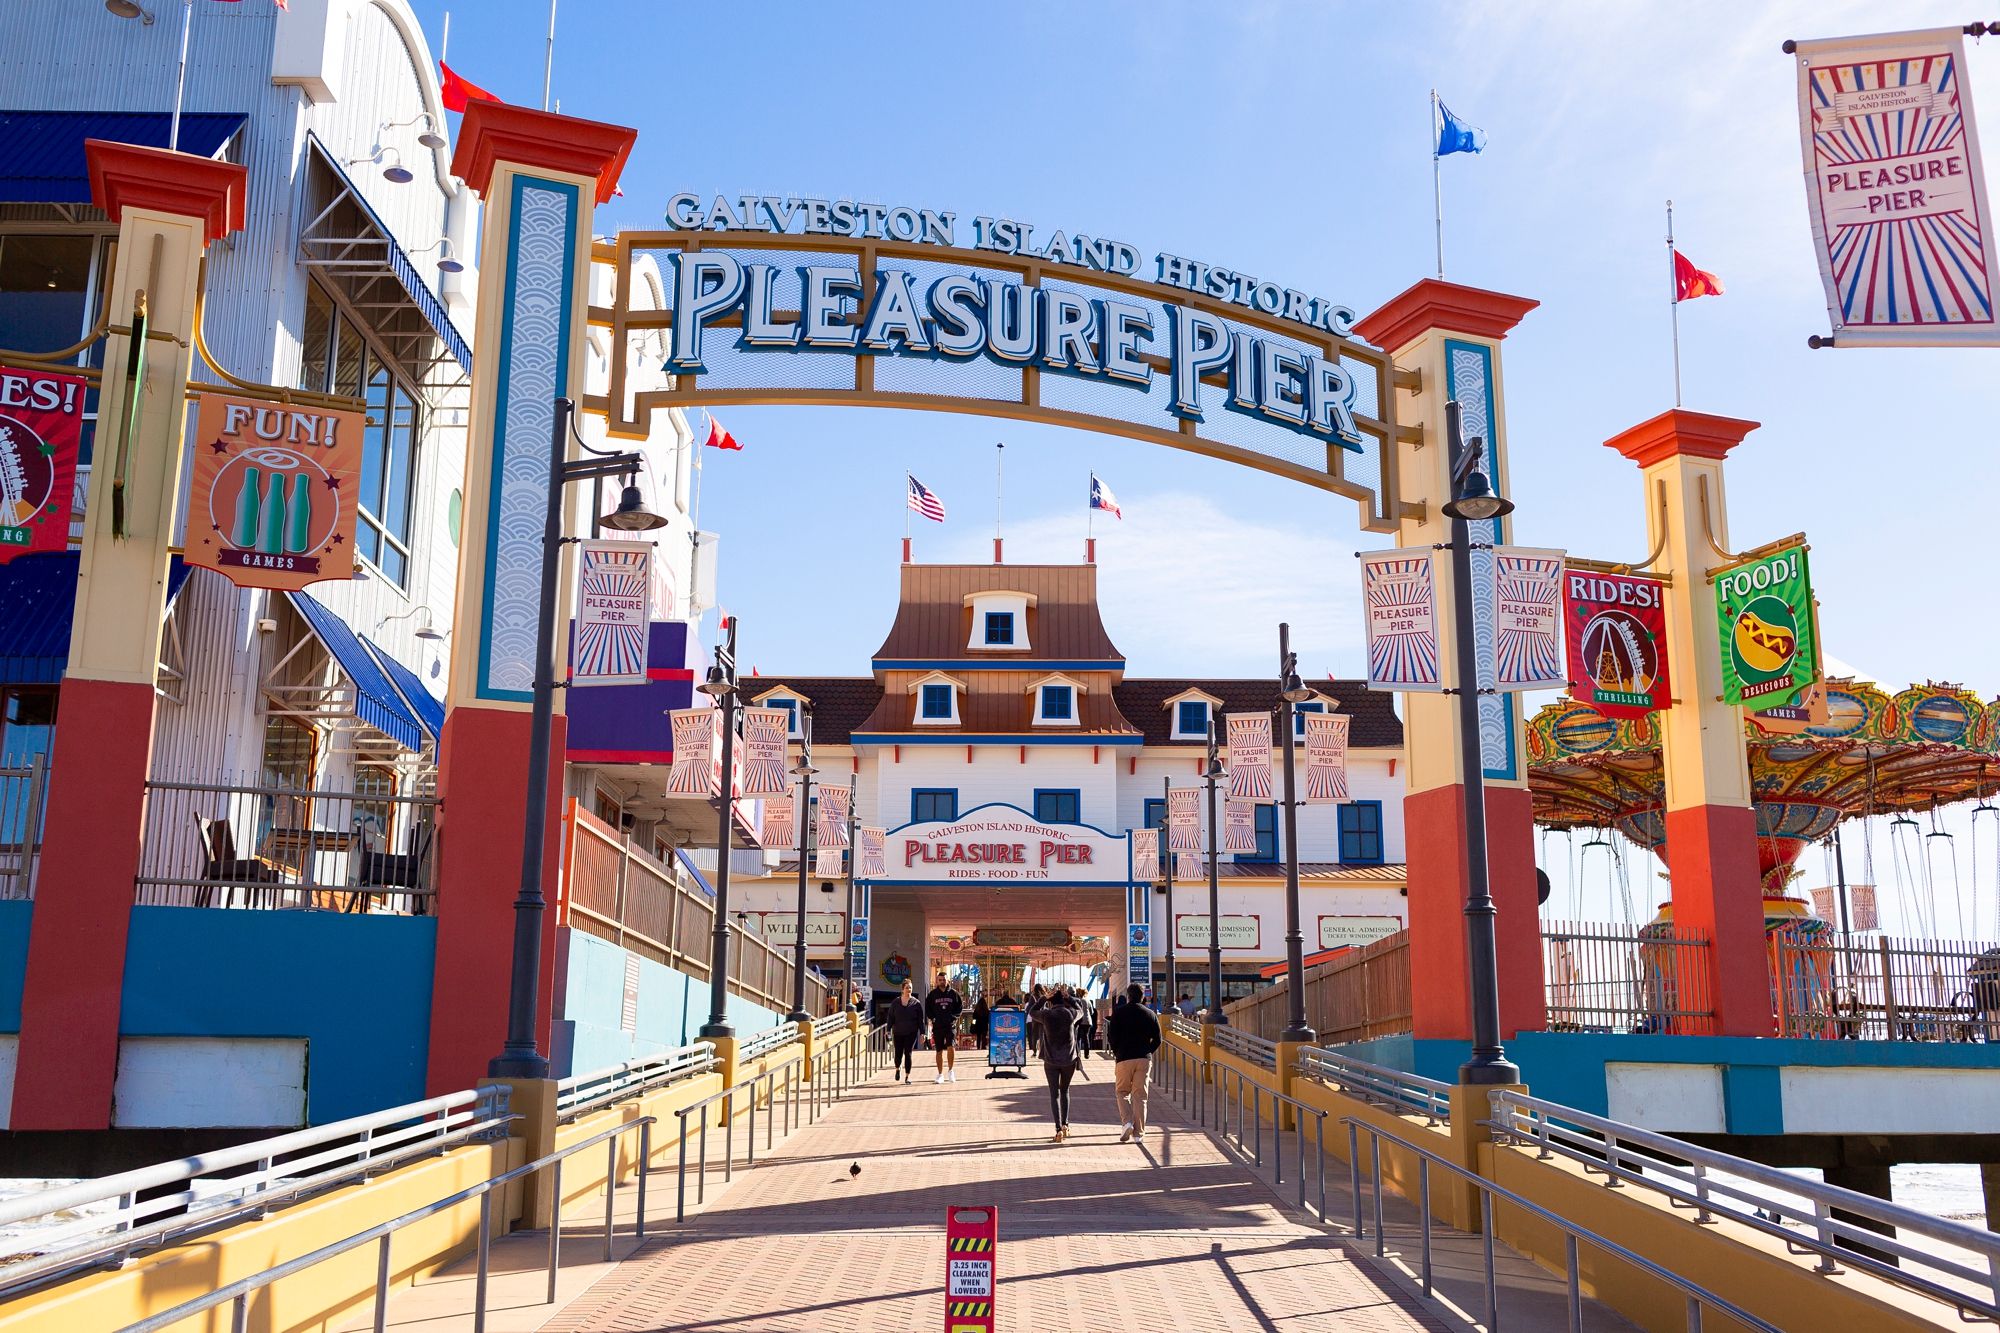 Galveston Island Historic Pleasure Pier entrance